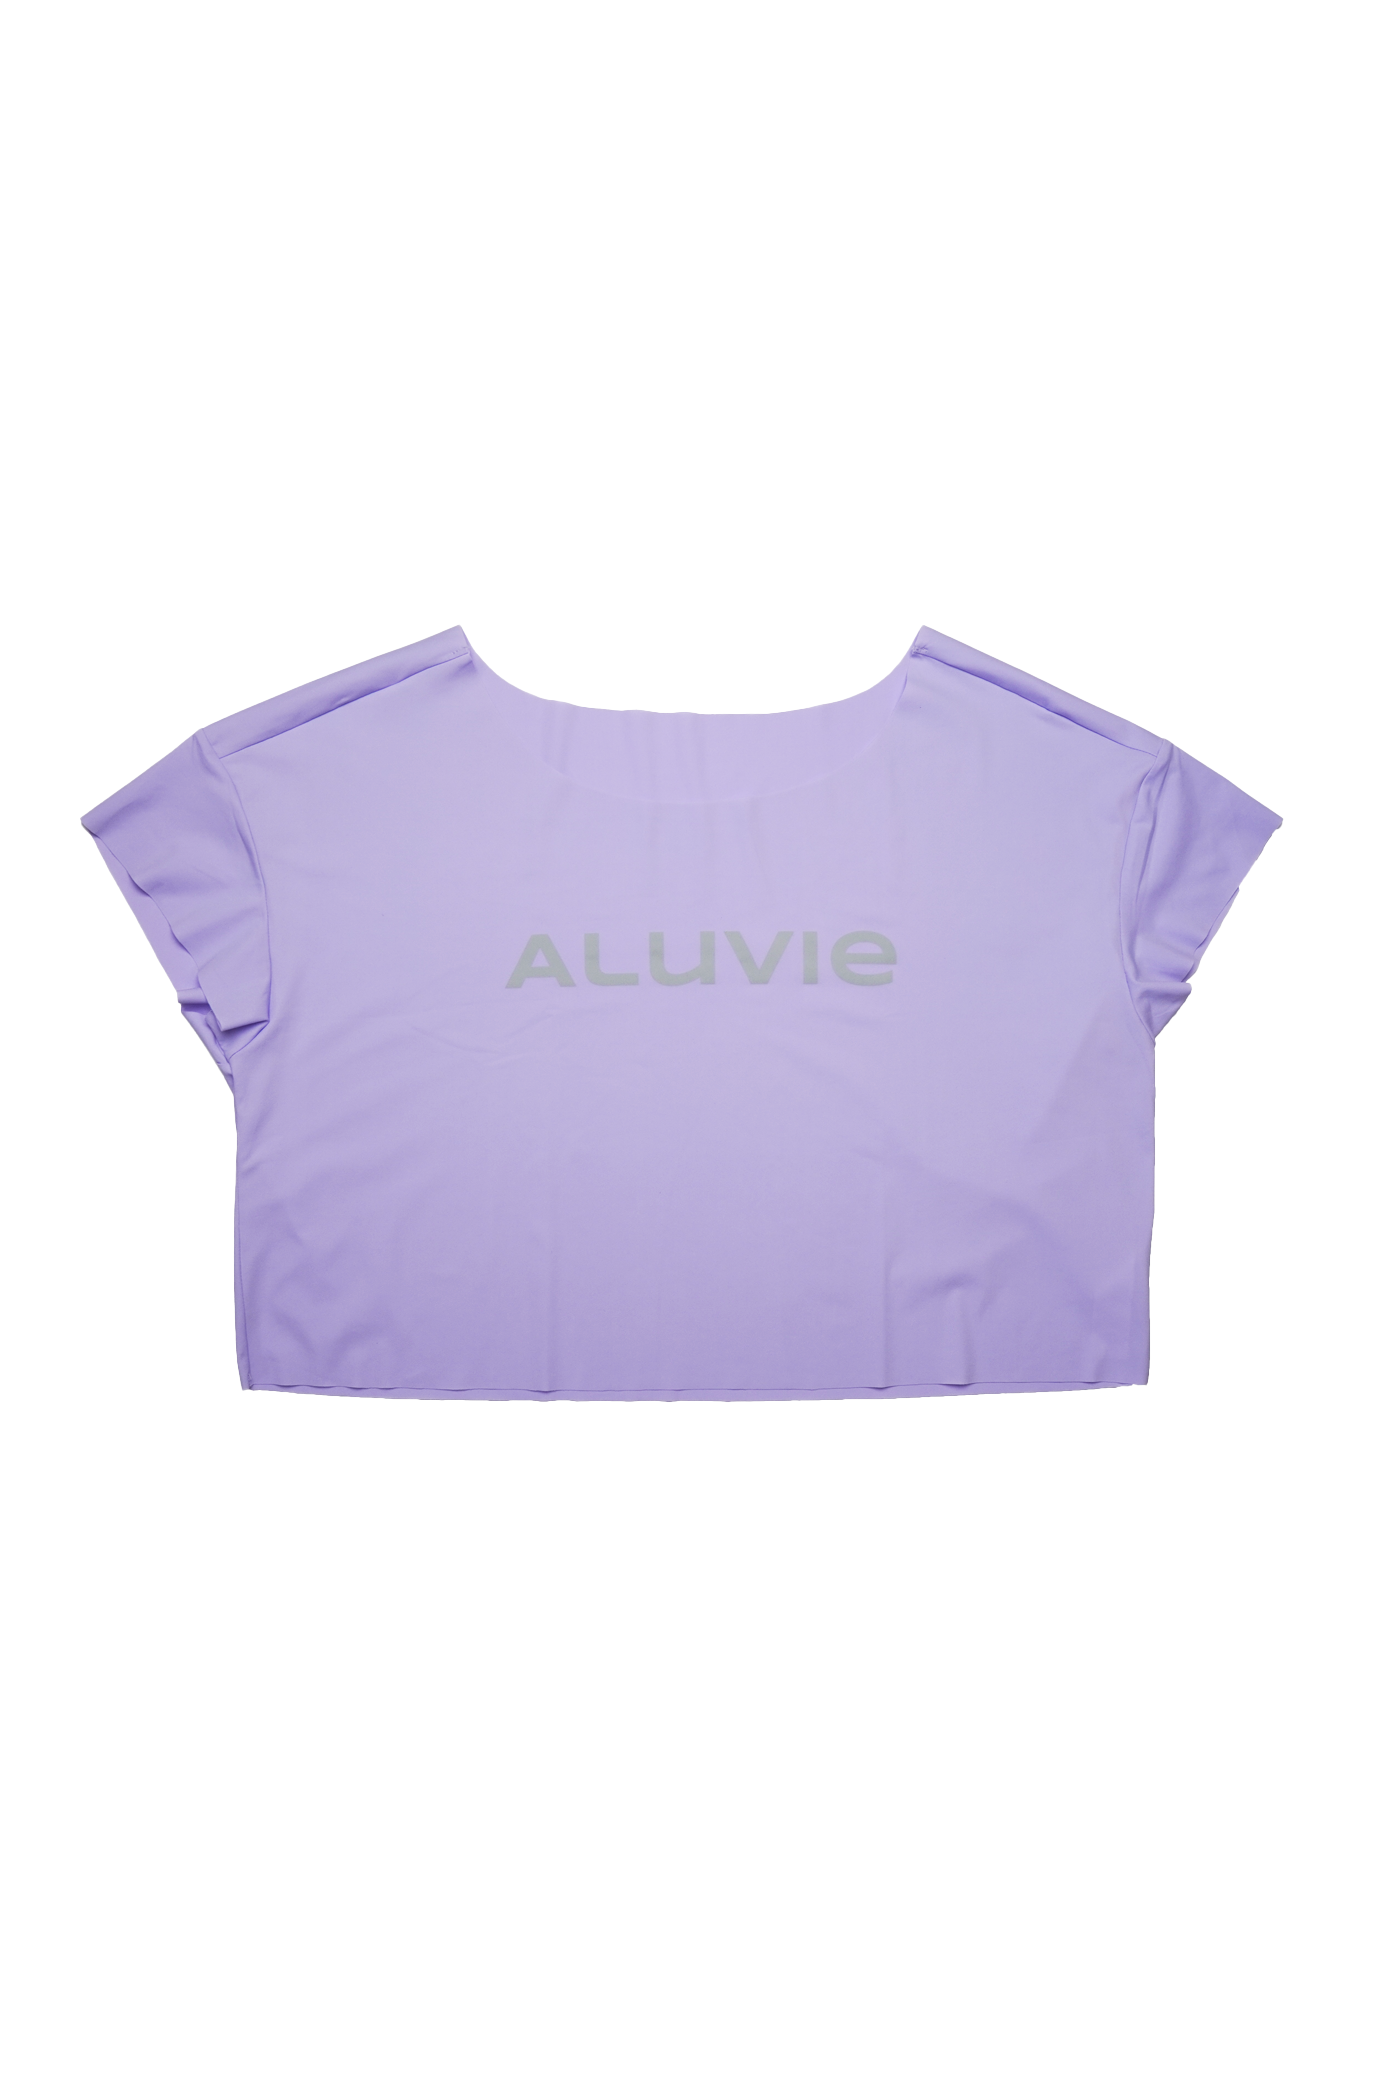 Icee - Aluvie Lavender Ice